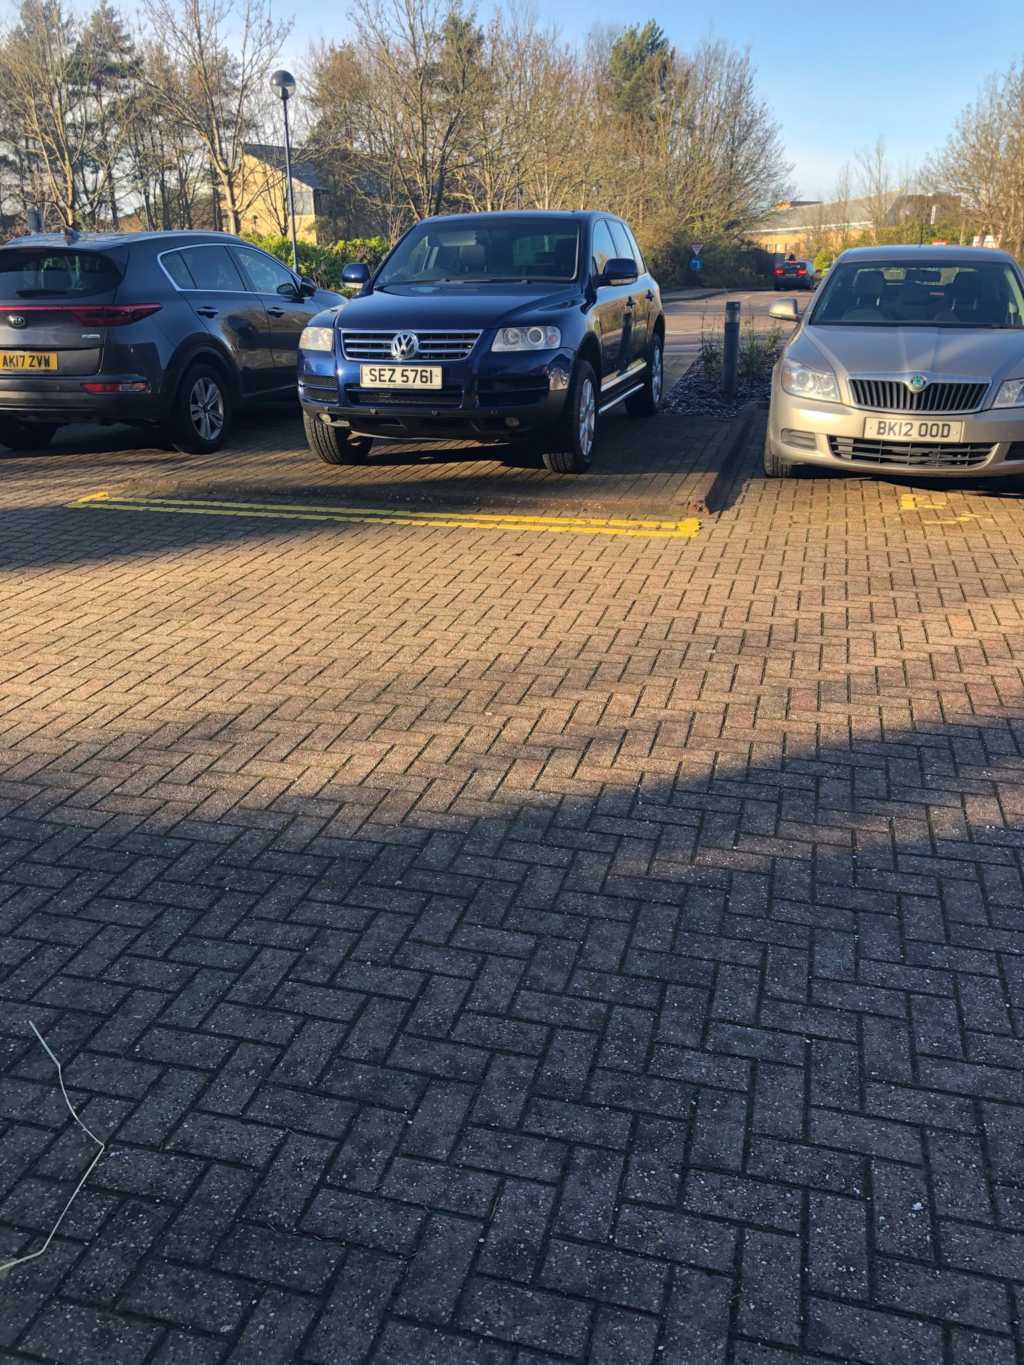 SEZ 5761 displaying Selfish Parking